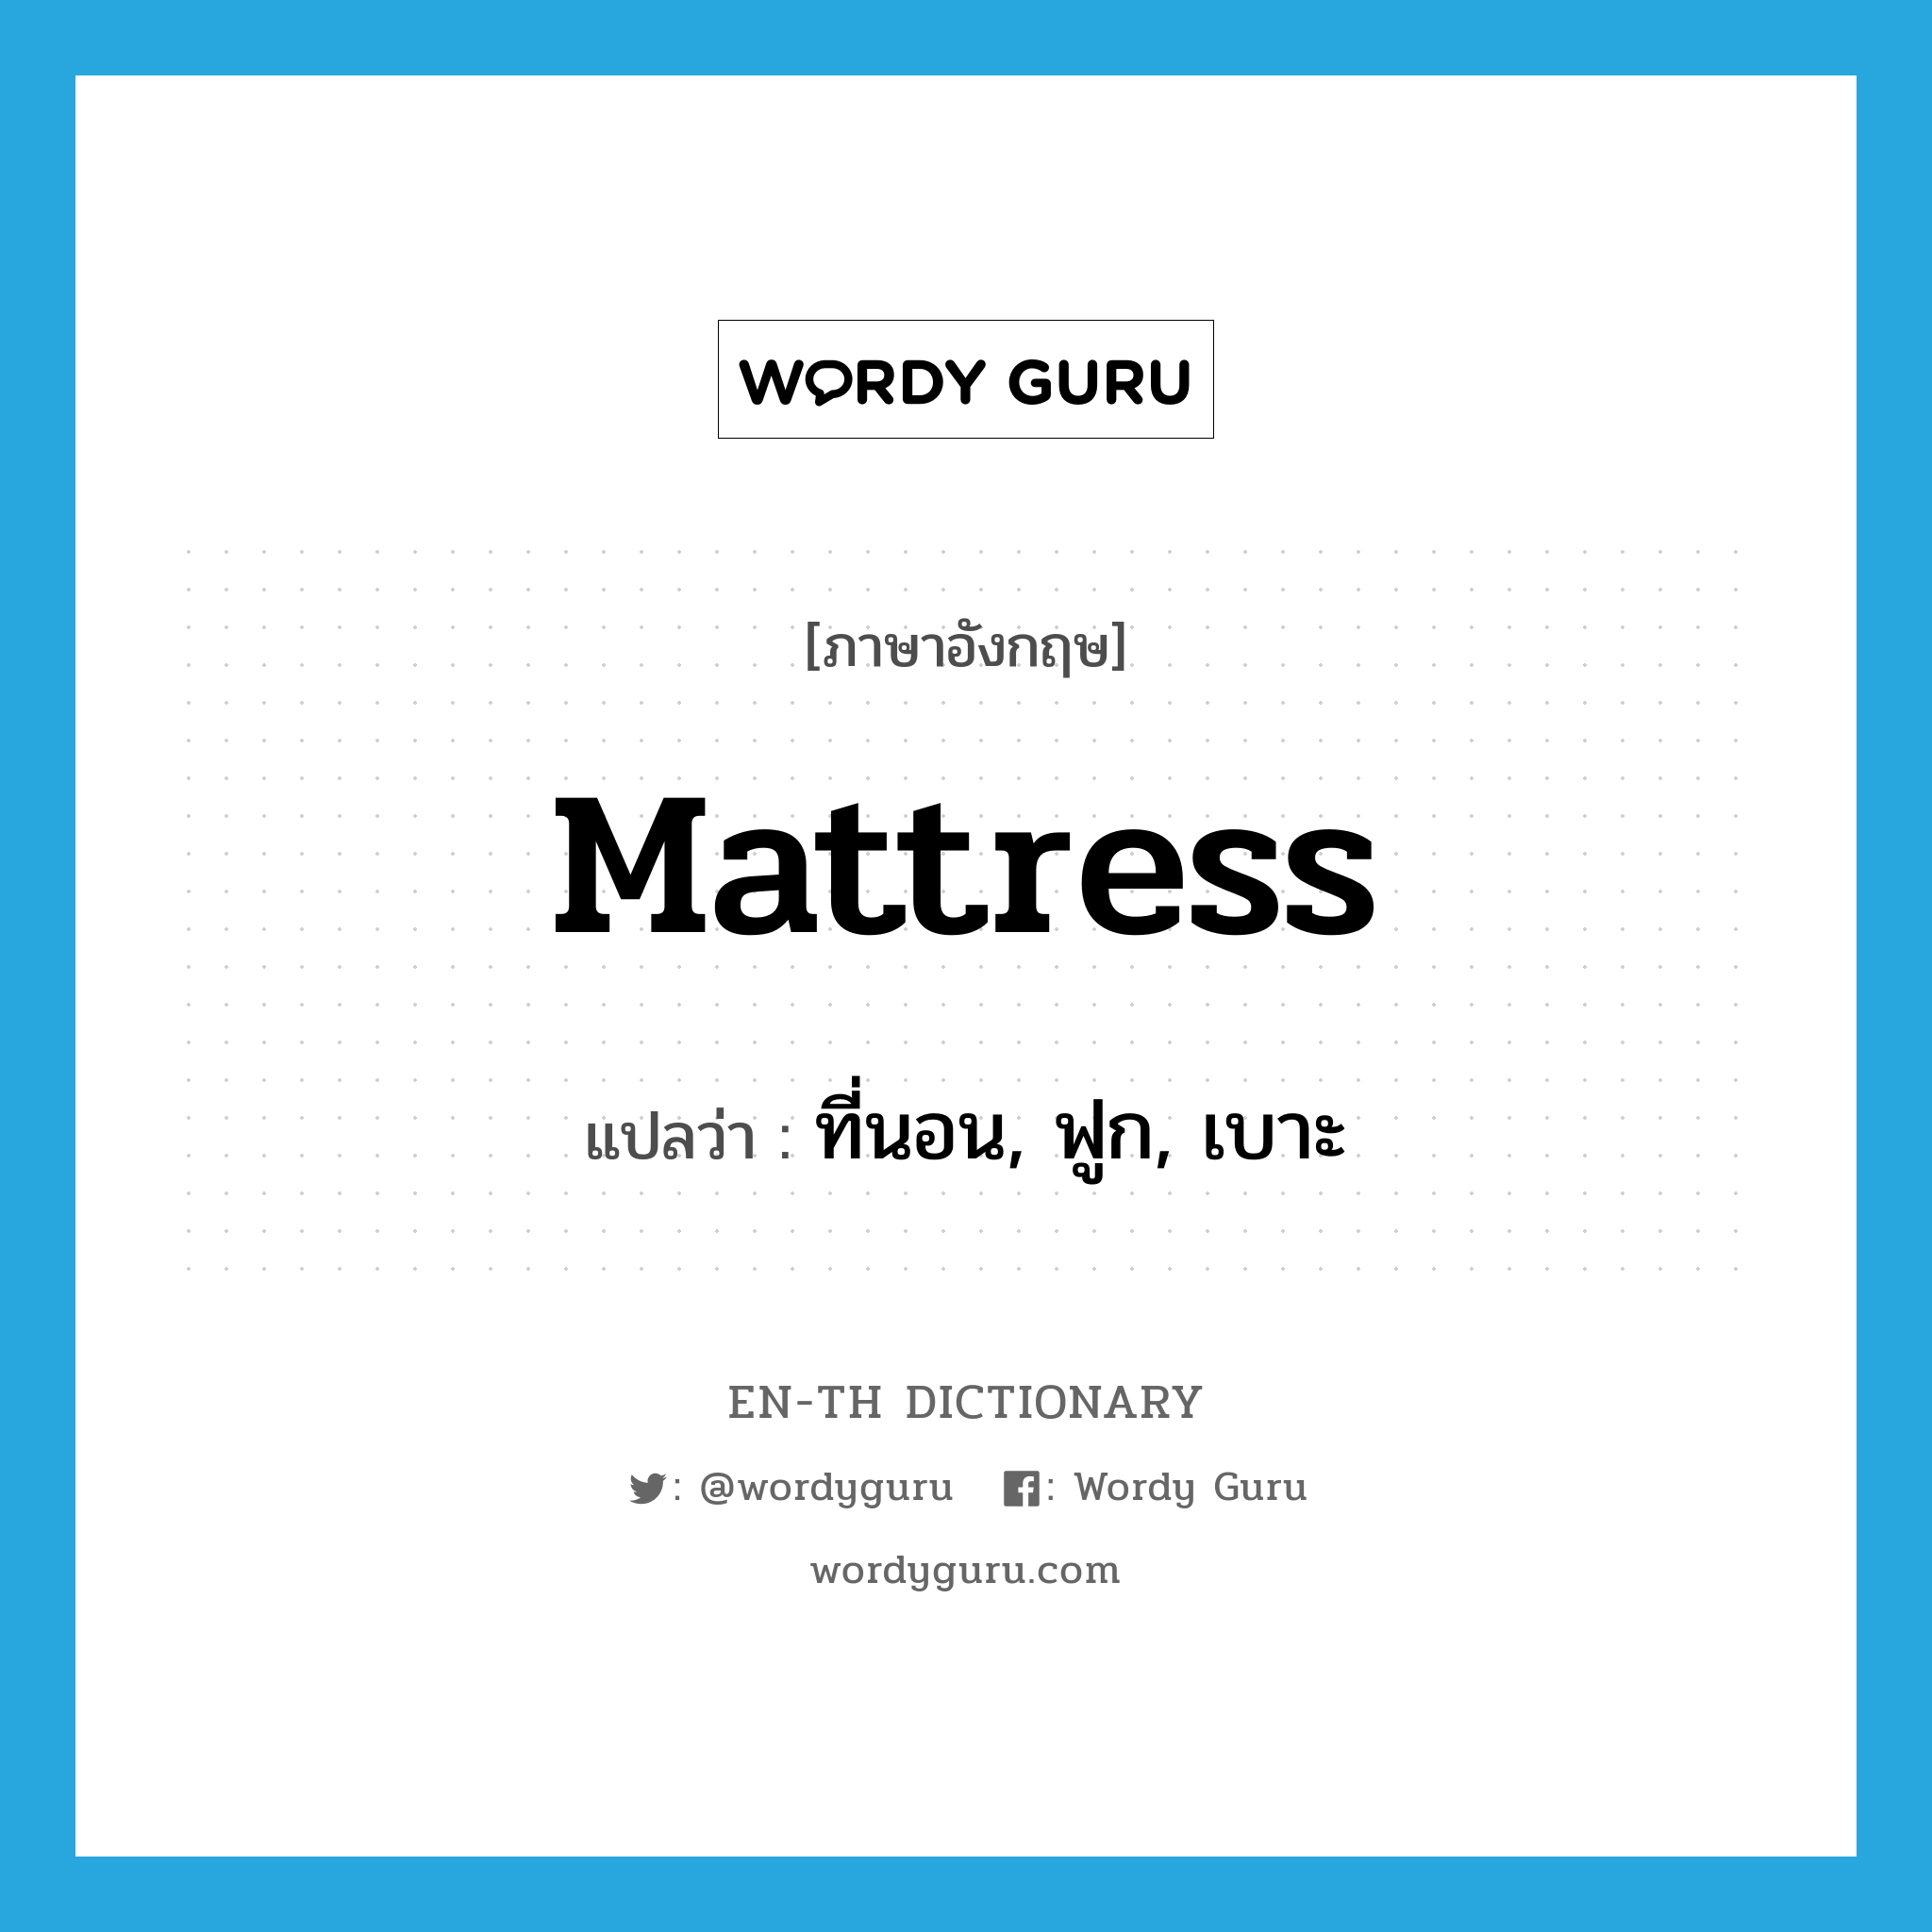 mattress แปลว่า?, คำศัพท์ภาษาอังกฤษ mattress แปลว่า ที่นอน, ฟูก, เบาะ ประเภท N หมวด N